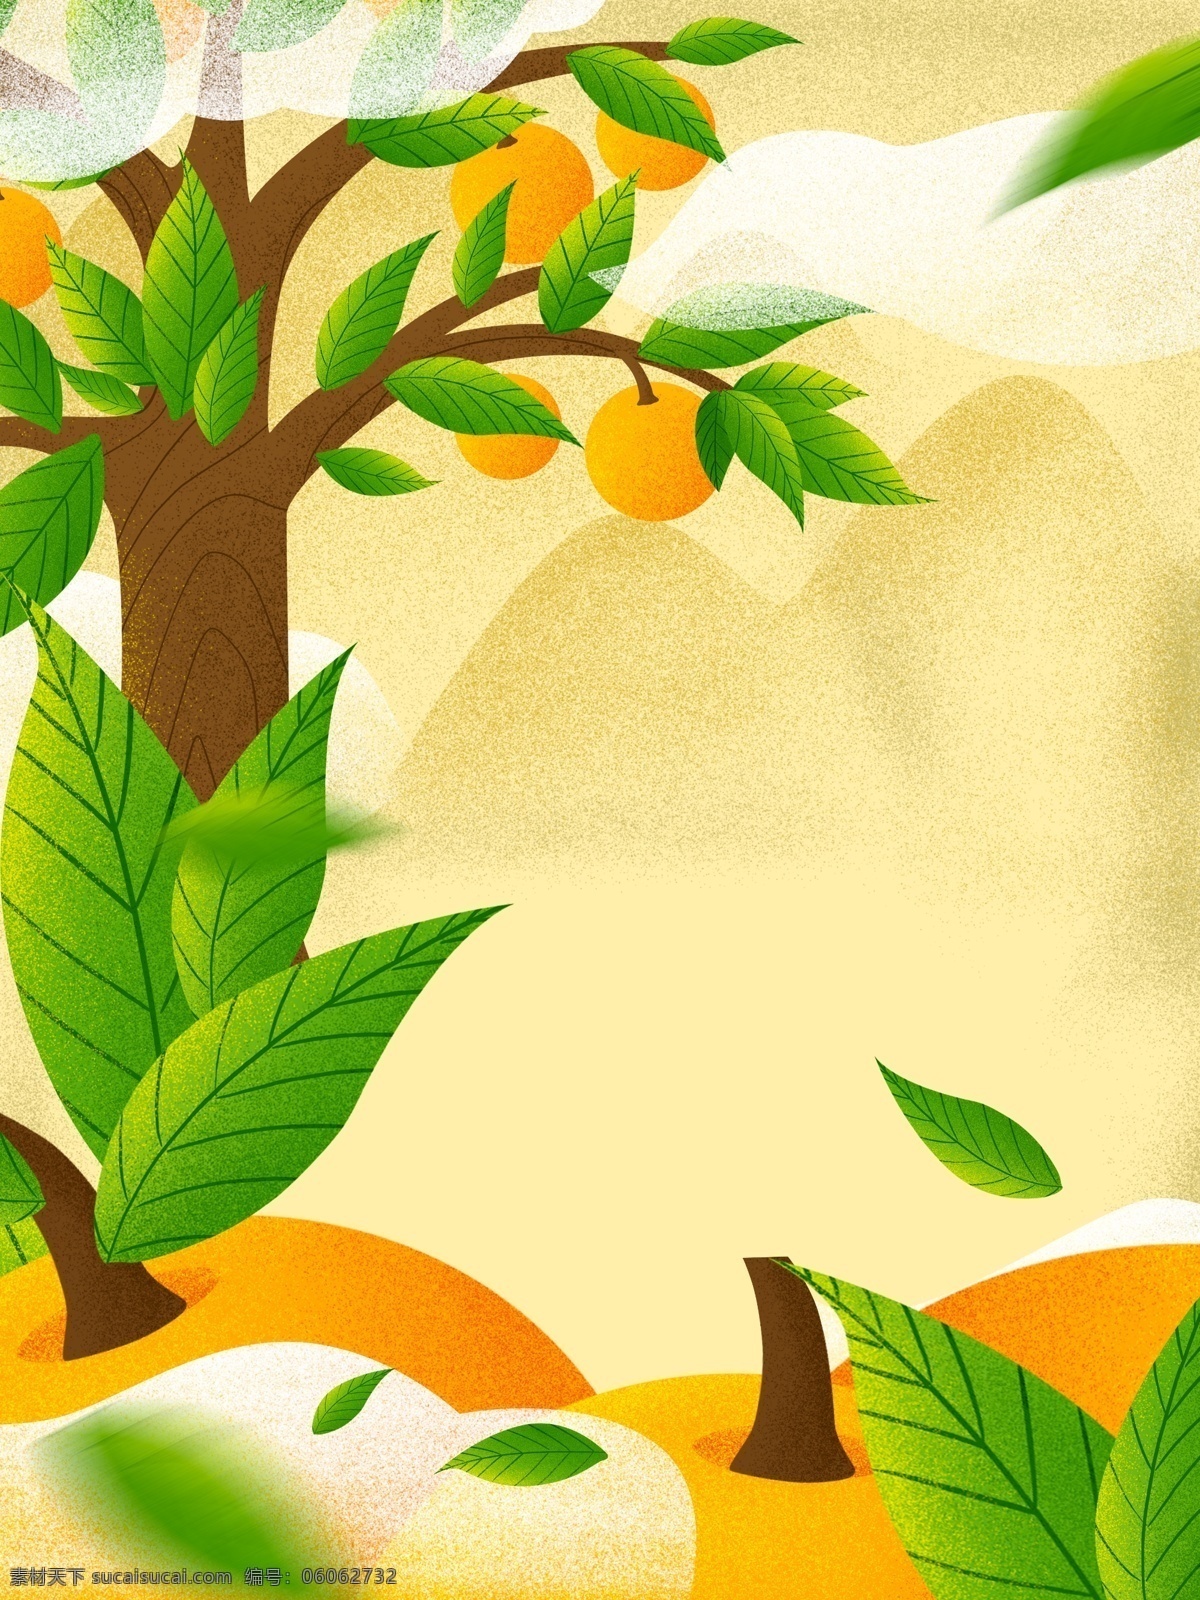 黄色 手绘 芒果树 插画 背景 小清新背景 通用背景 水果背景图 植物背景 果树 特邀背景